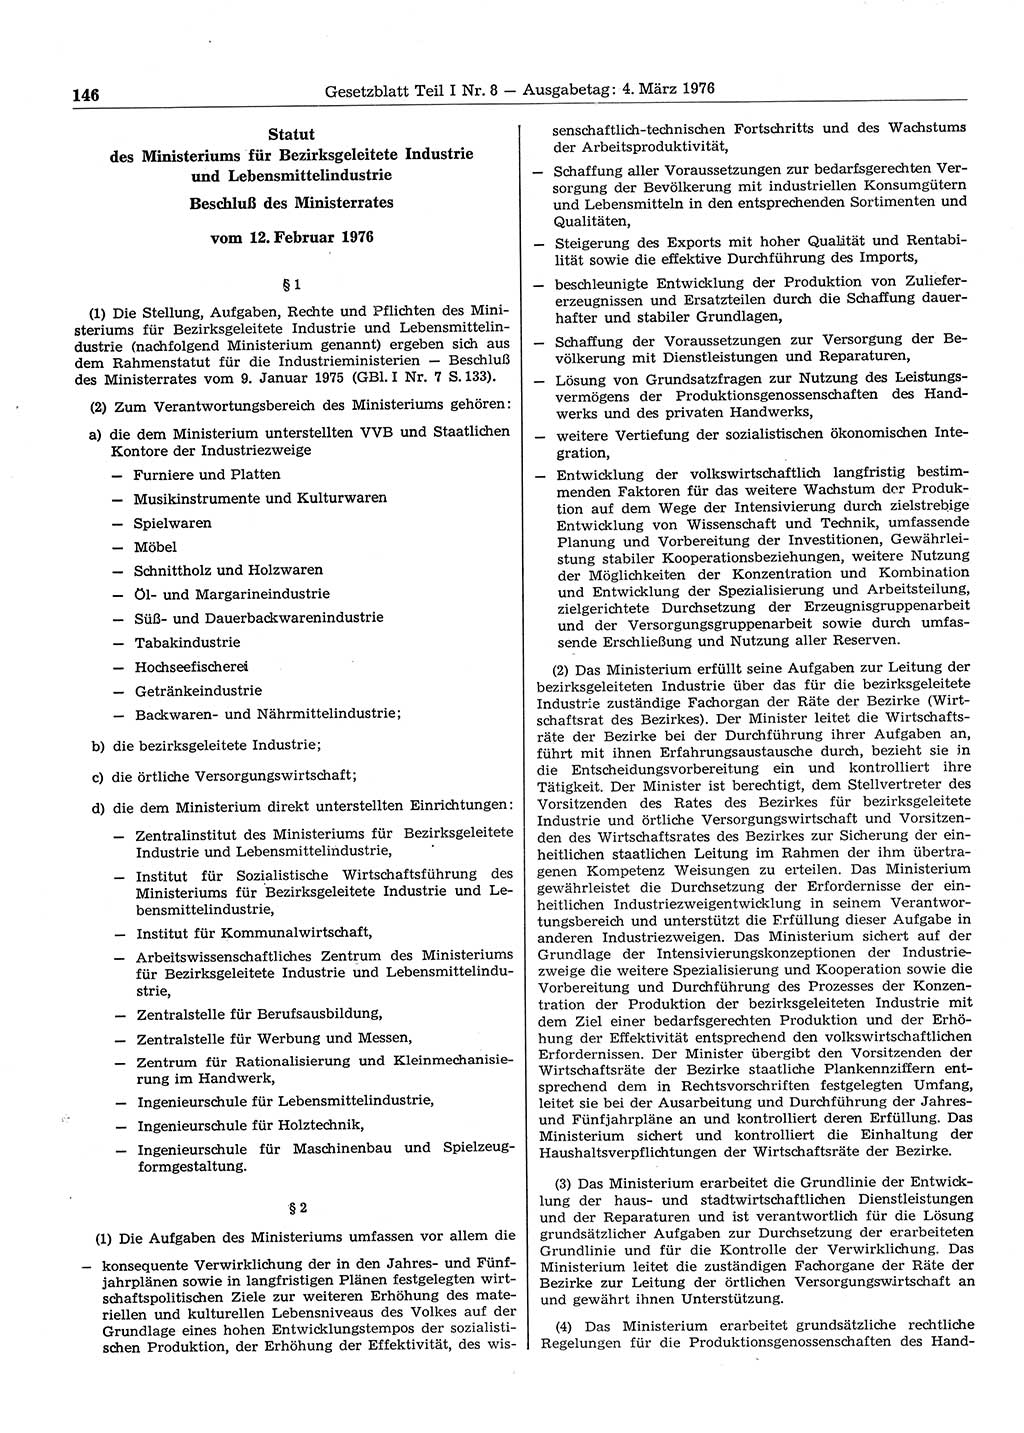 Gesetzblatt (GBl.) der Deutschen Demokratischen Republik (DDR) Teil Ⅰ 1976, Seite 146 (GBl. DDR Ⅰ 1976, S. 146)